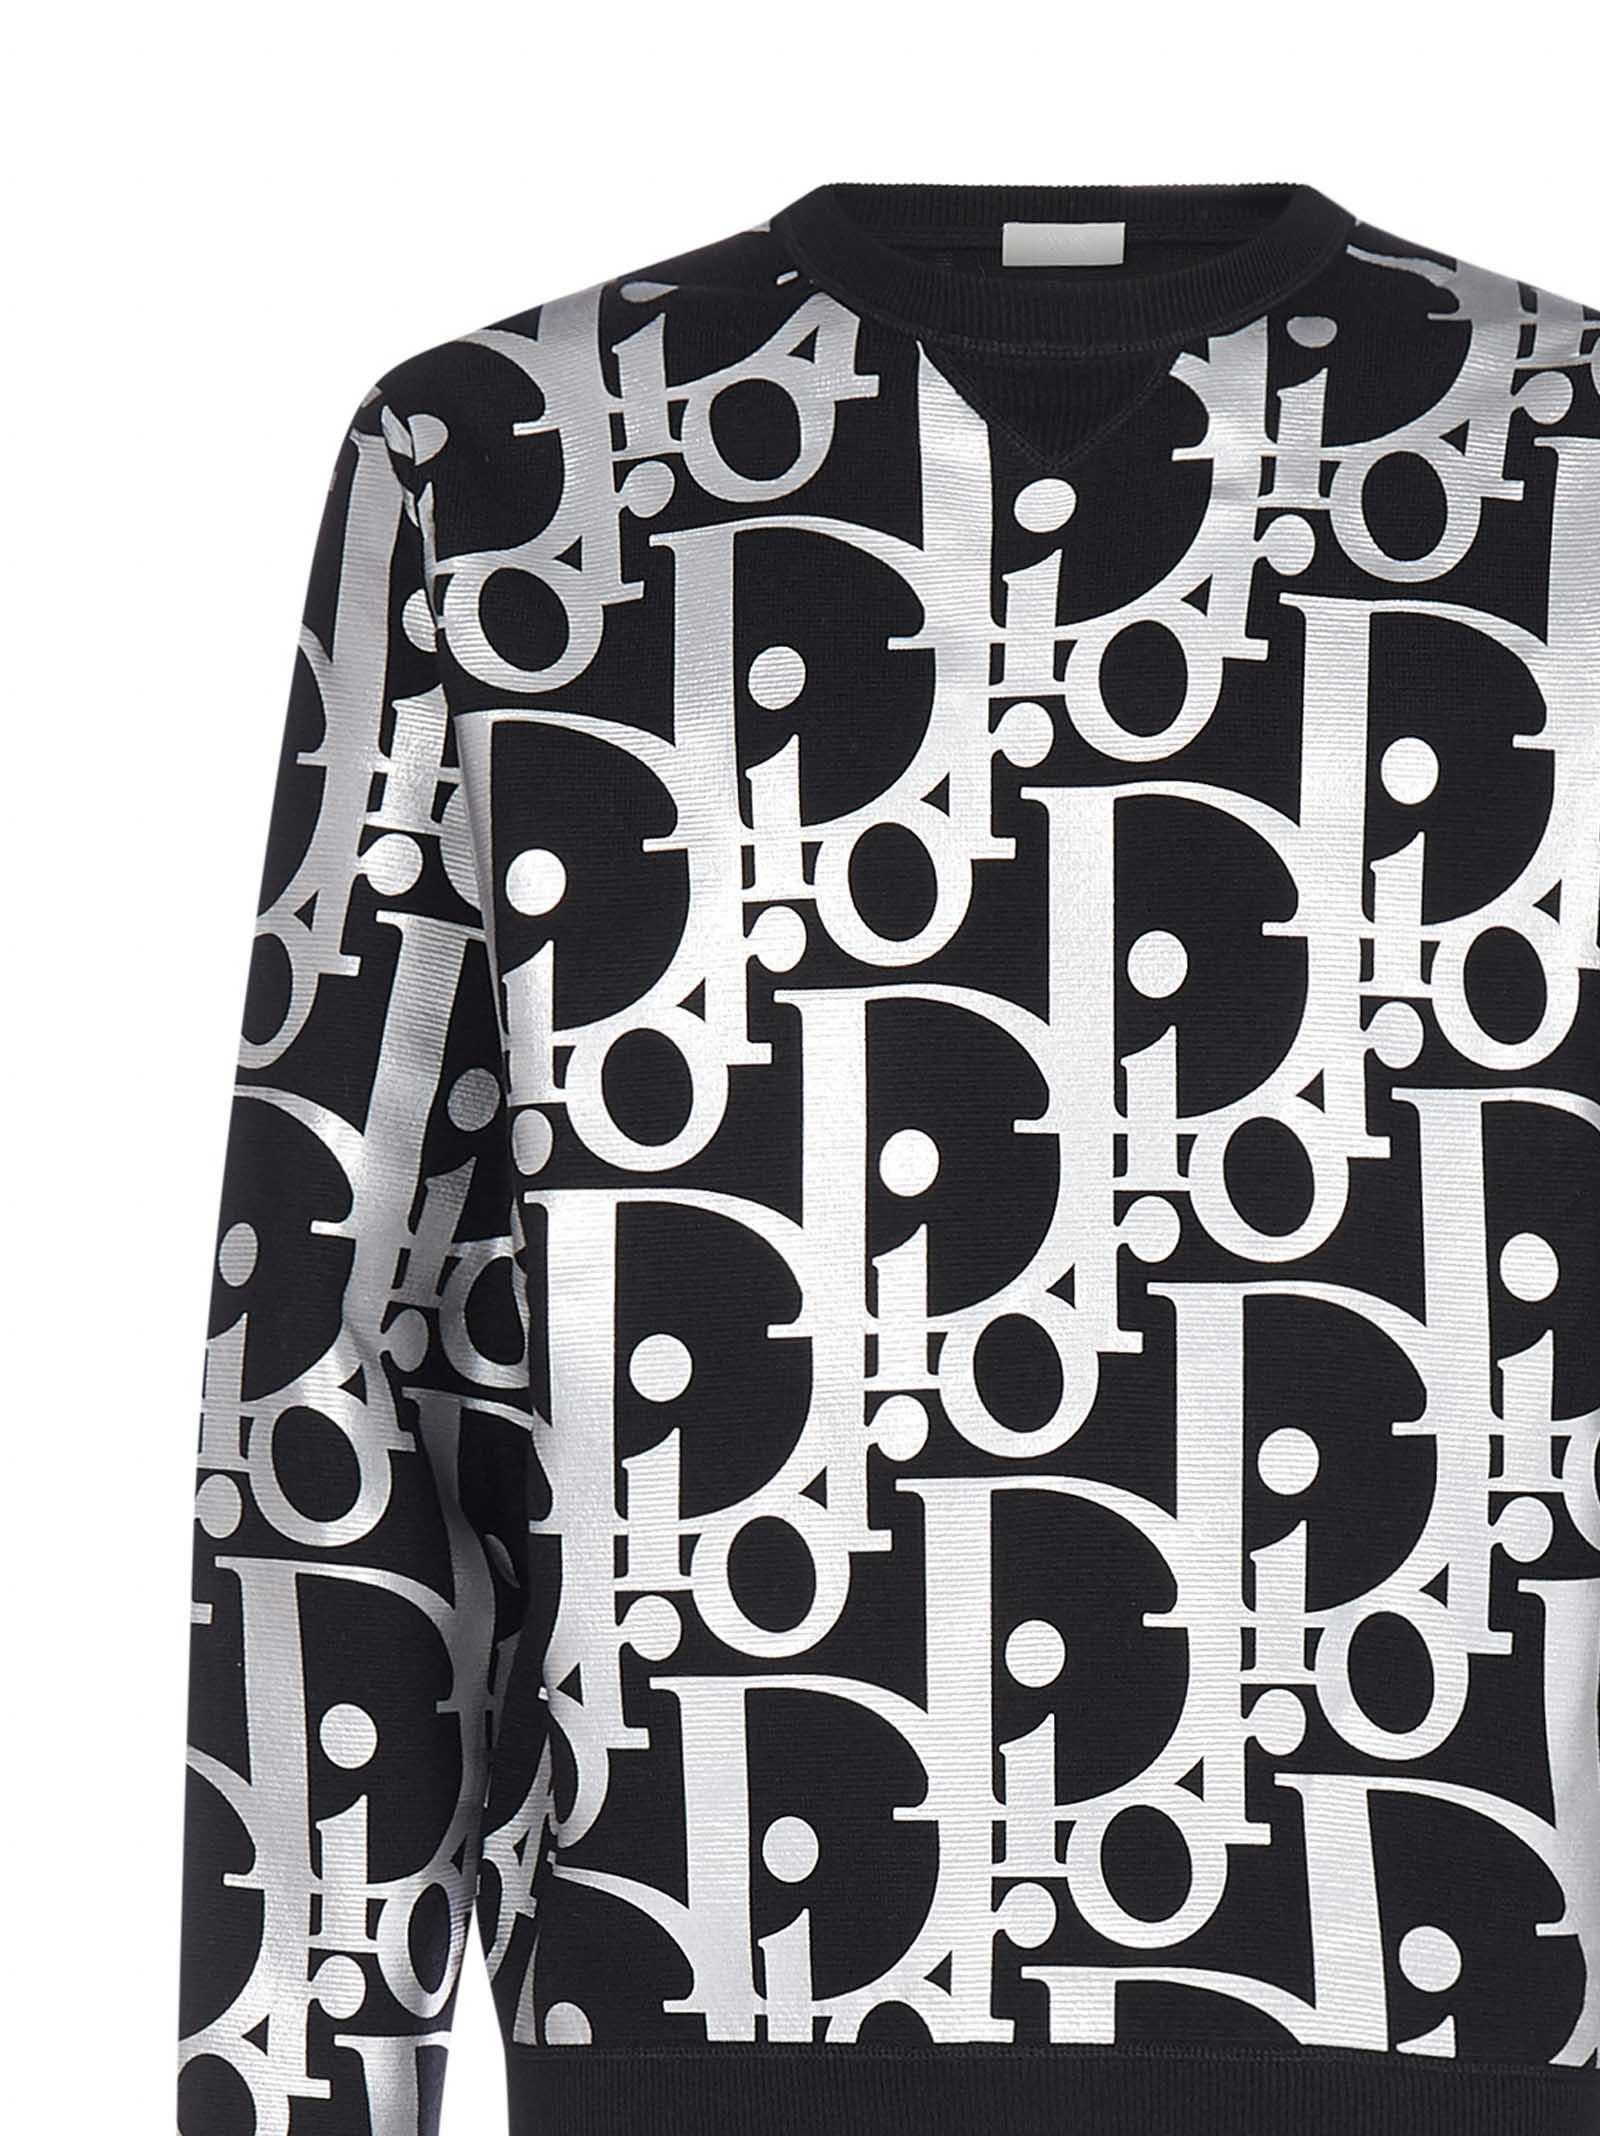 Dior Oblique Jacquard Sweater in Black for Men